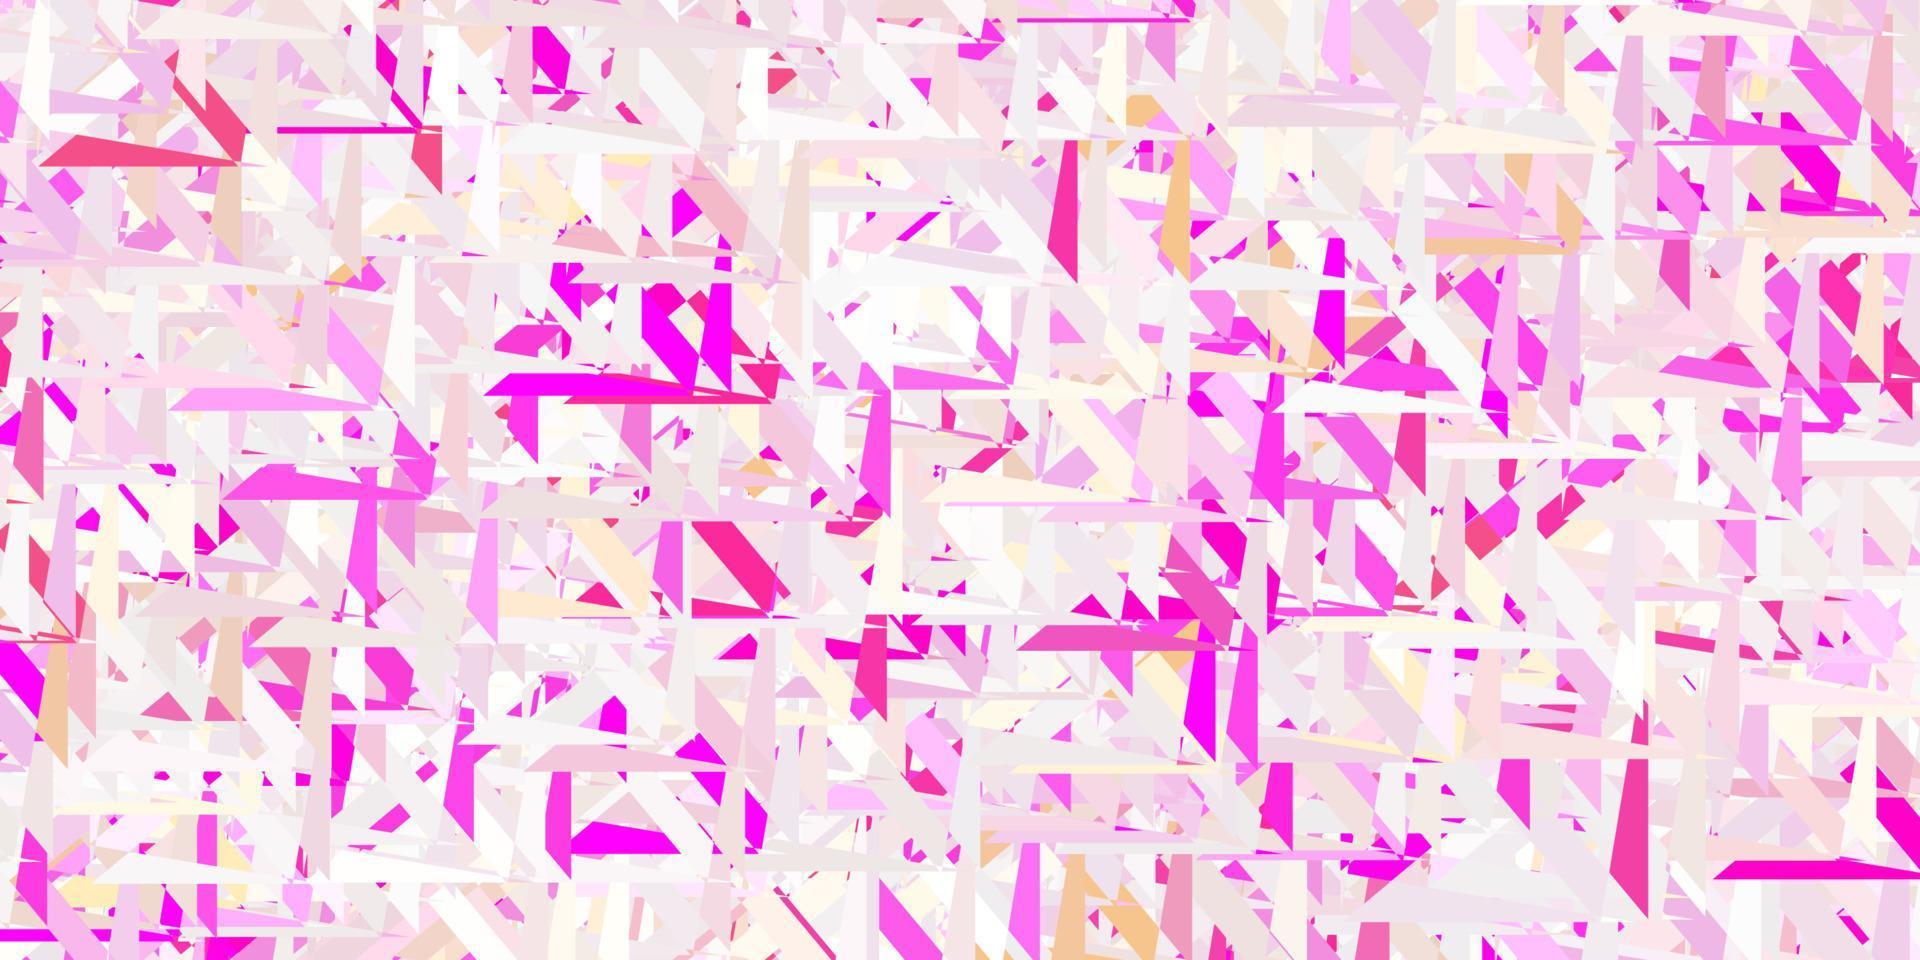 padrão de vetor rosa claro com formas poligonais.